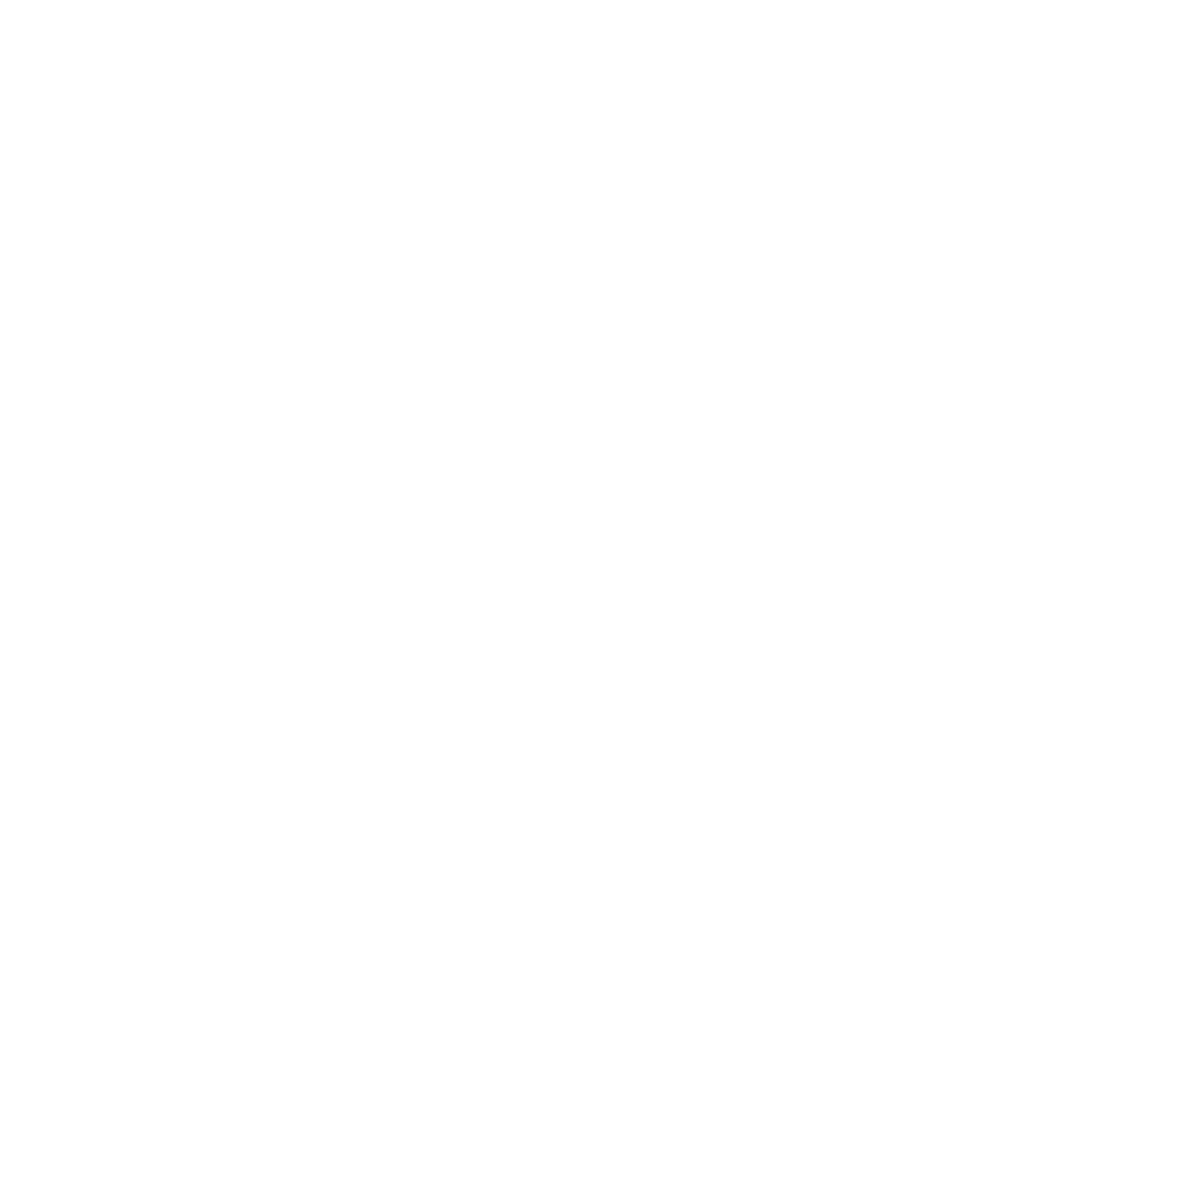 Location Pin - Emblem Clipart (1181x1180), Png Download